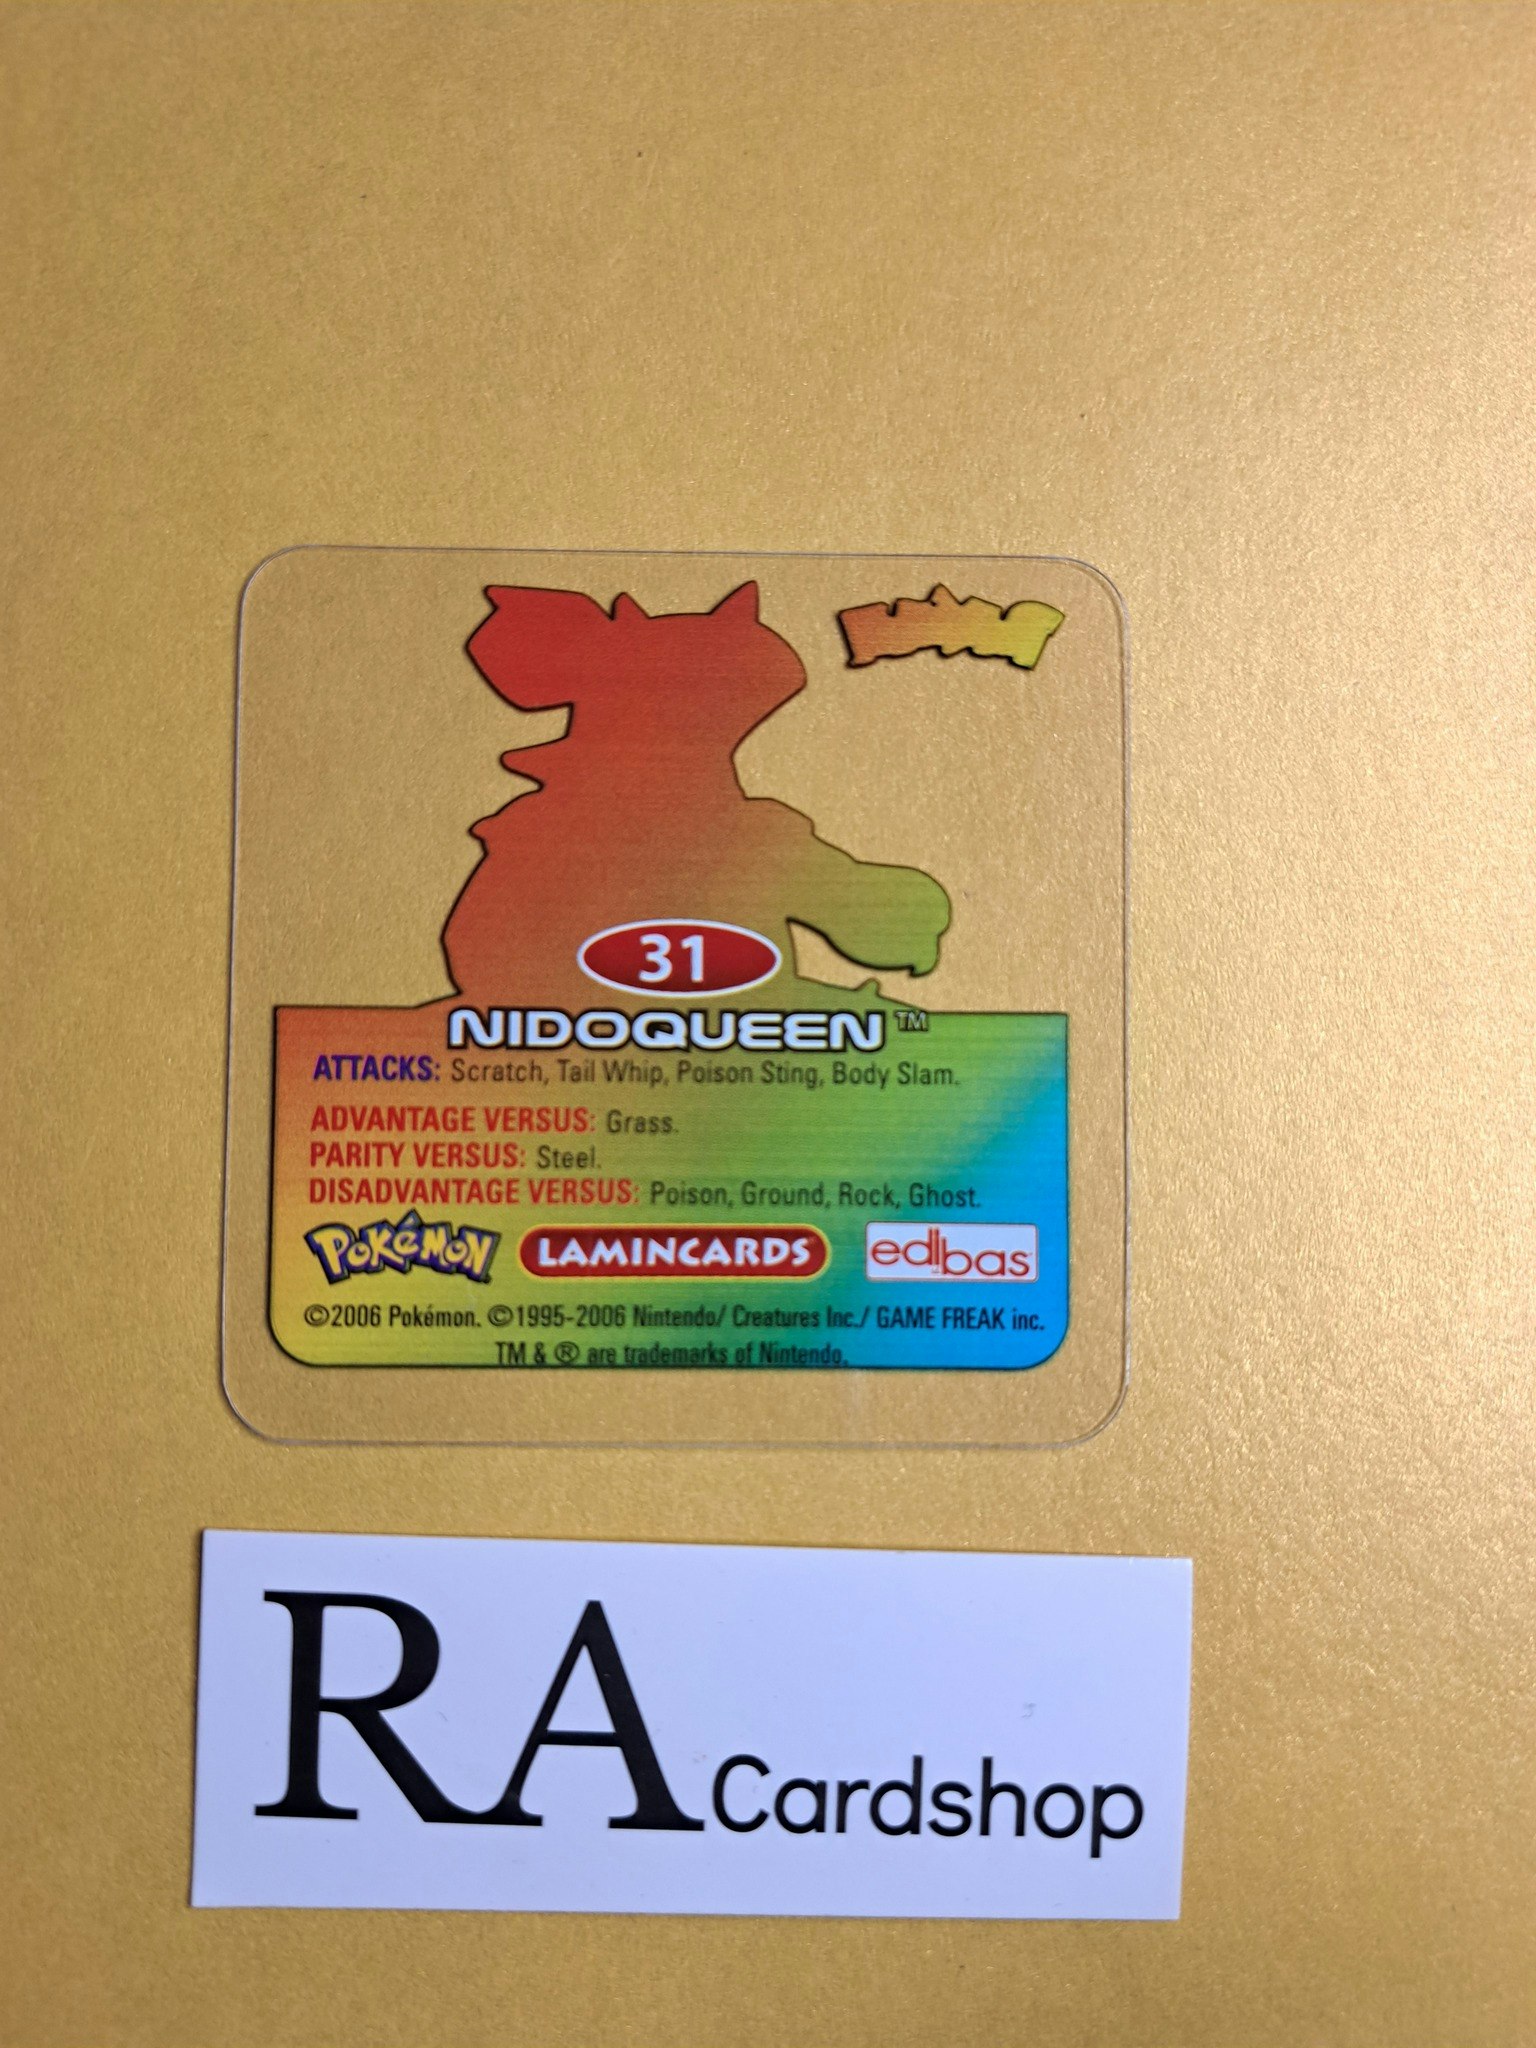 Nidoqueen (3) #31 Edibas Lamincard Pokemon